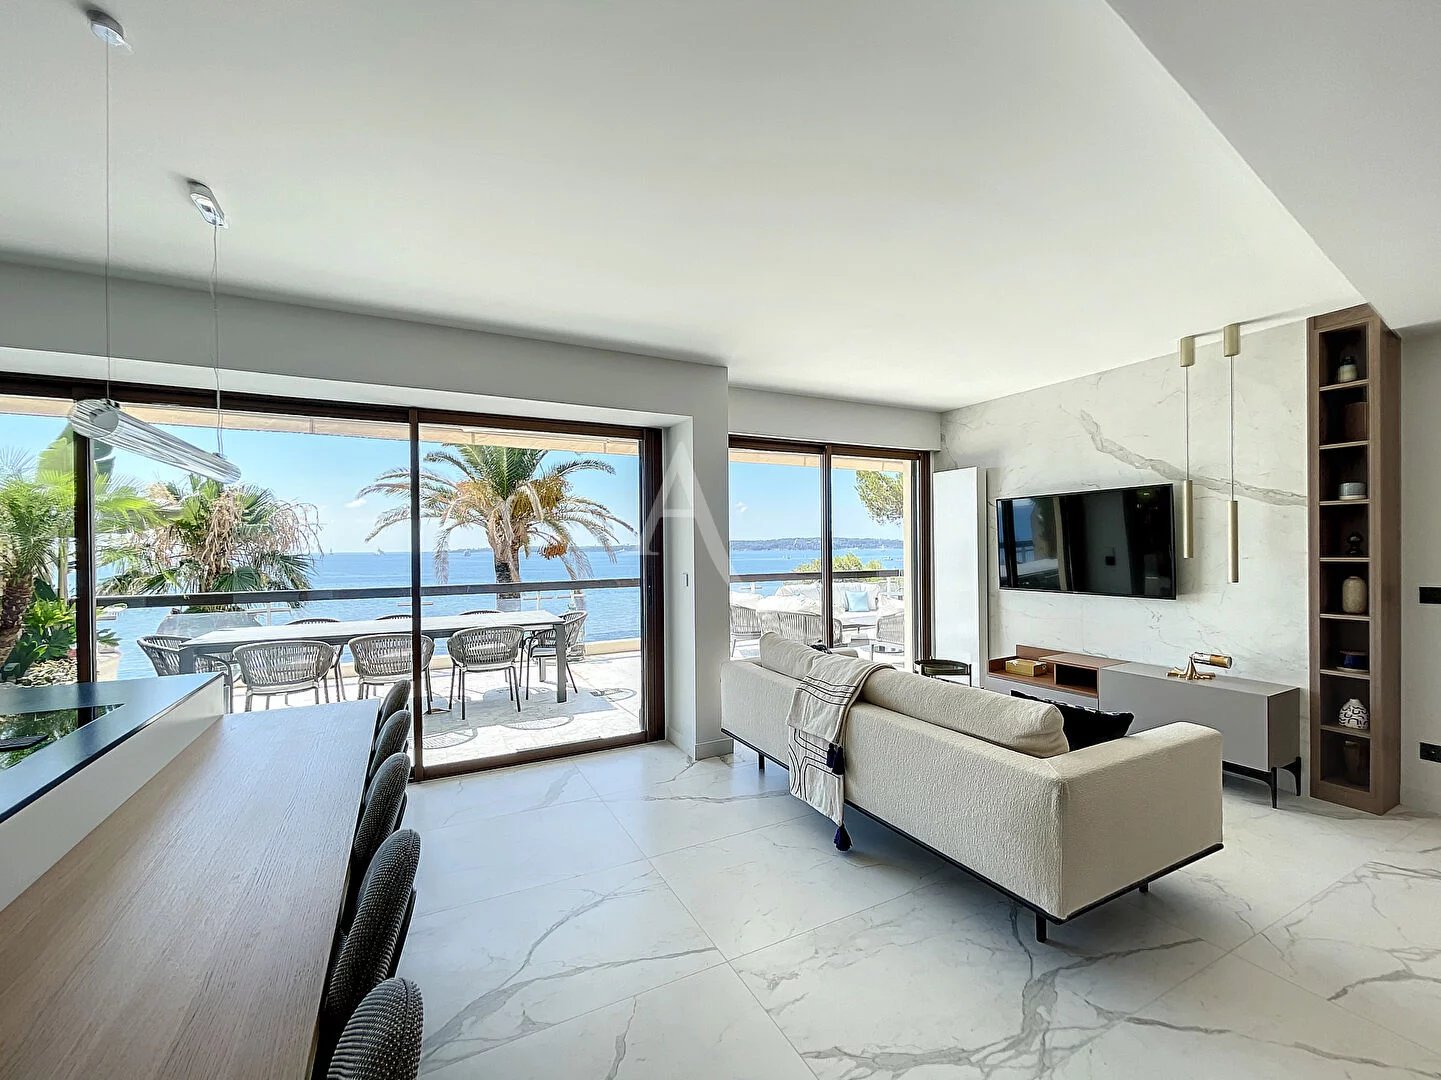 7270253-Cannes - Pointe Palm Beach - appartement 4 pièces - vue mer - Dernier étage